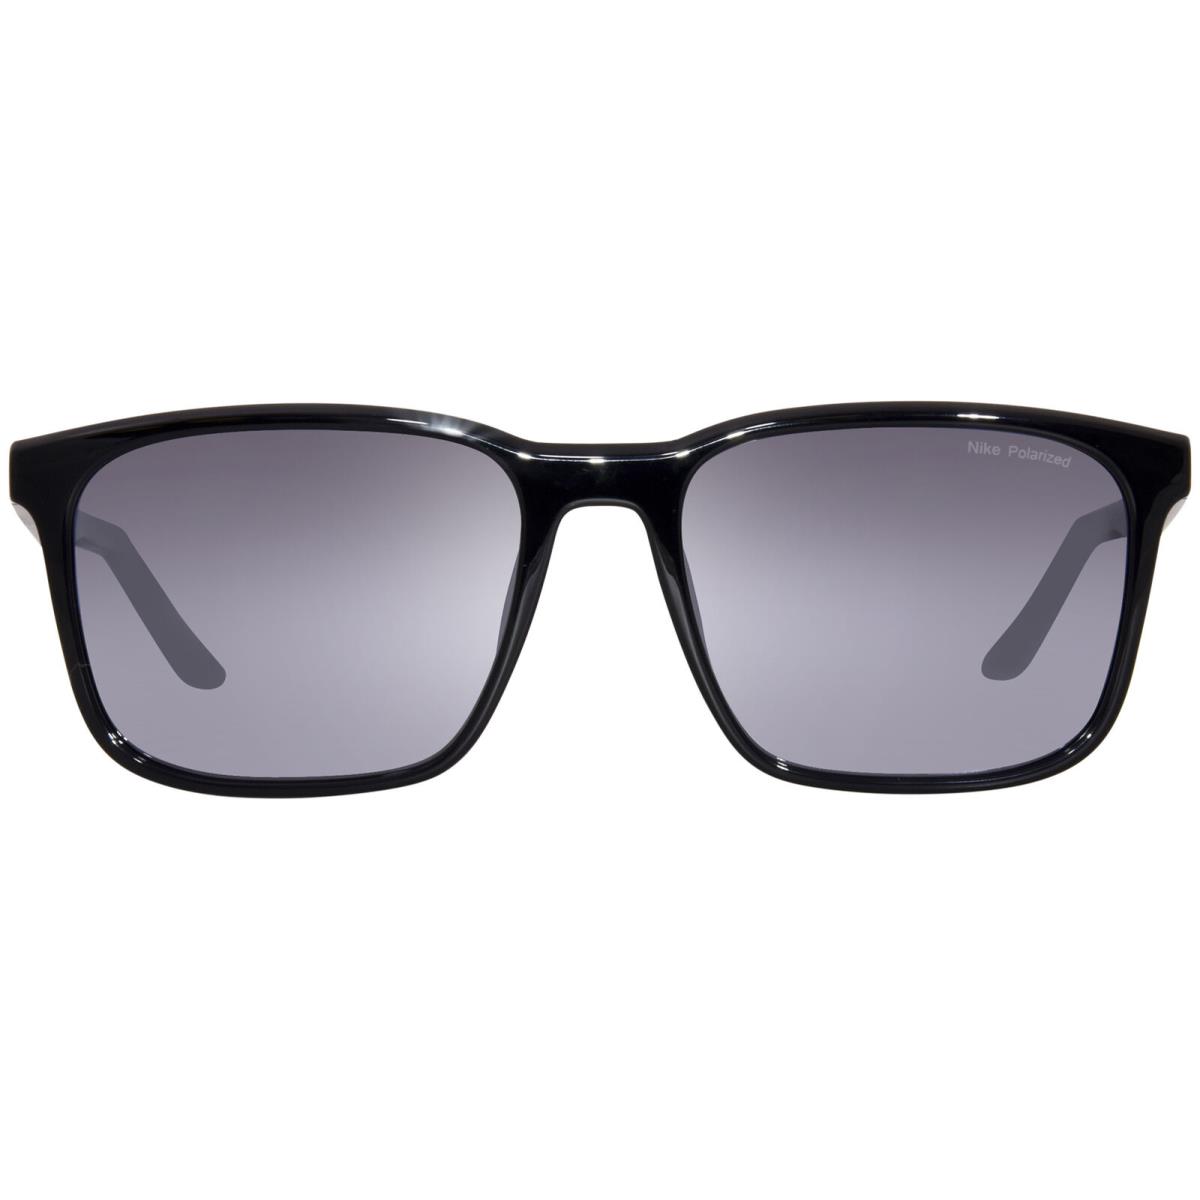 Nike Rave-p FD1849 011 Sunglasses Black/polarized Silver Flash Square Shape 57mm